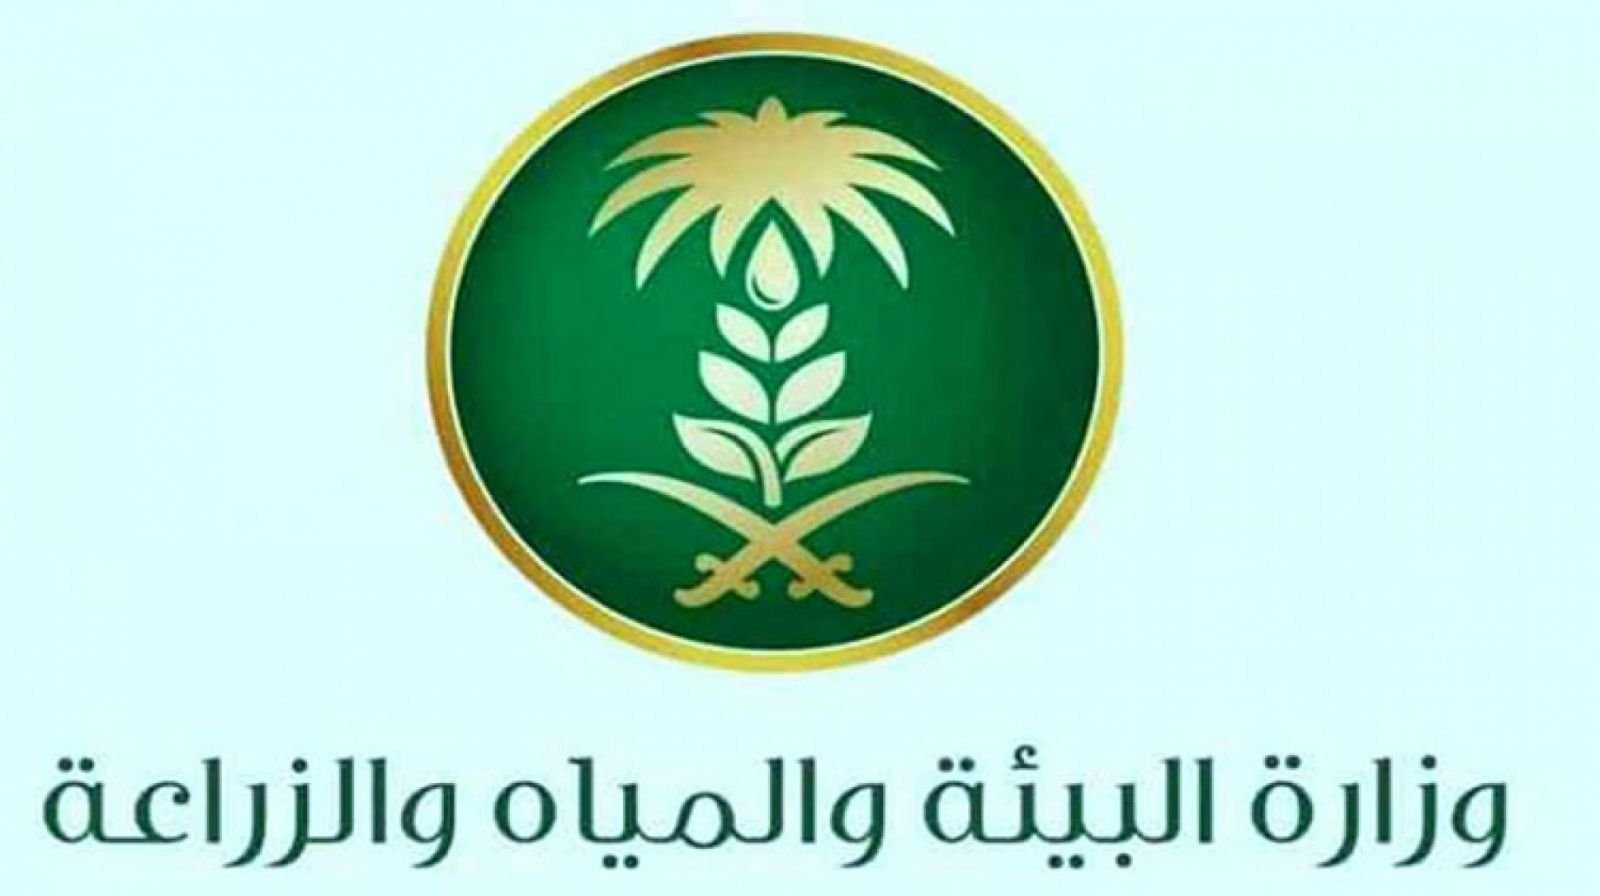 وظائف وزارة البيئة والمياه والزراعة بالسعودية